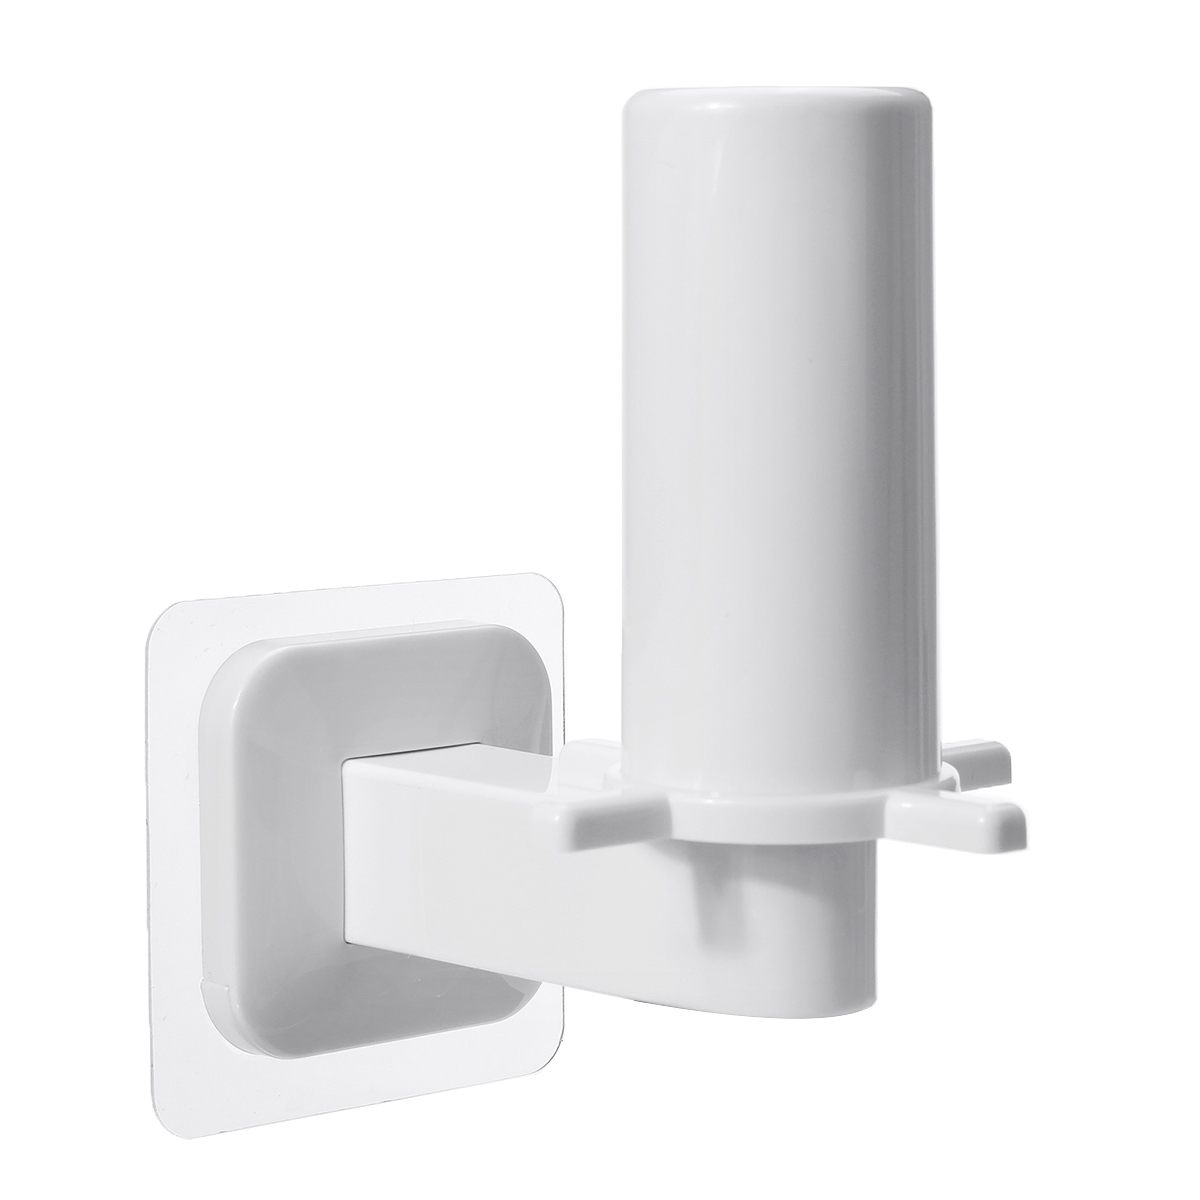 Roll-Paper-Holder-Toilet-Kitchen-Tissue-Towel-Storage-Organizer-Hanging-Rack-1590455-4